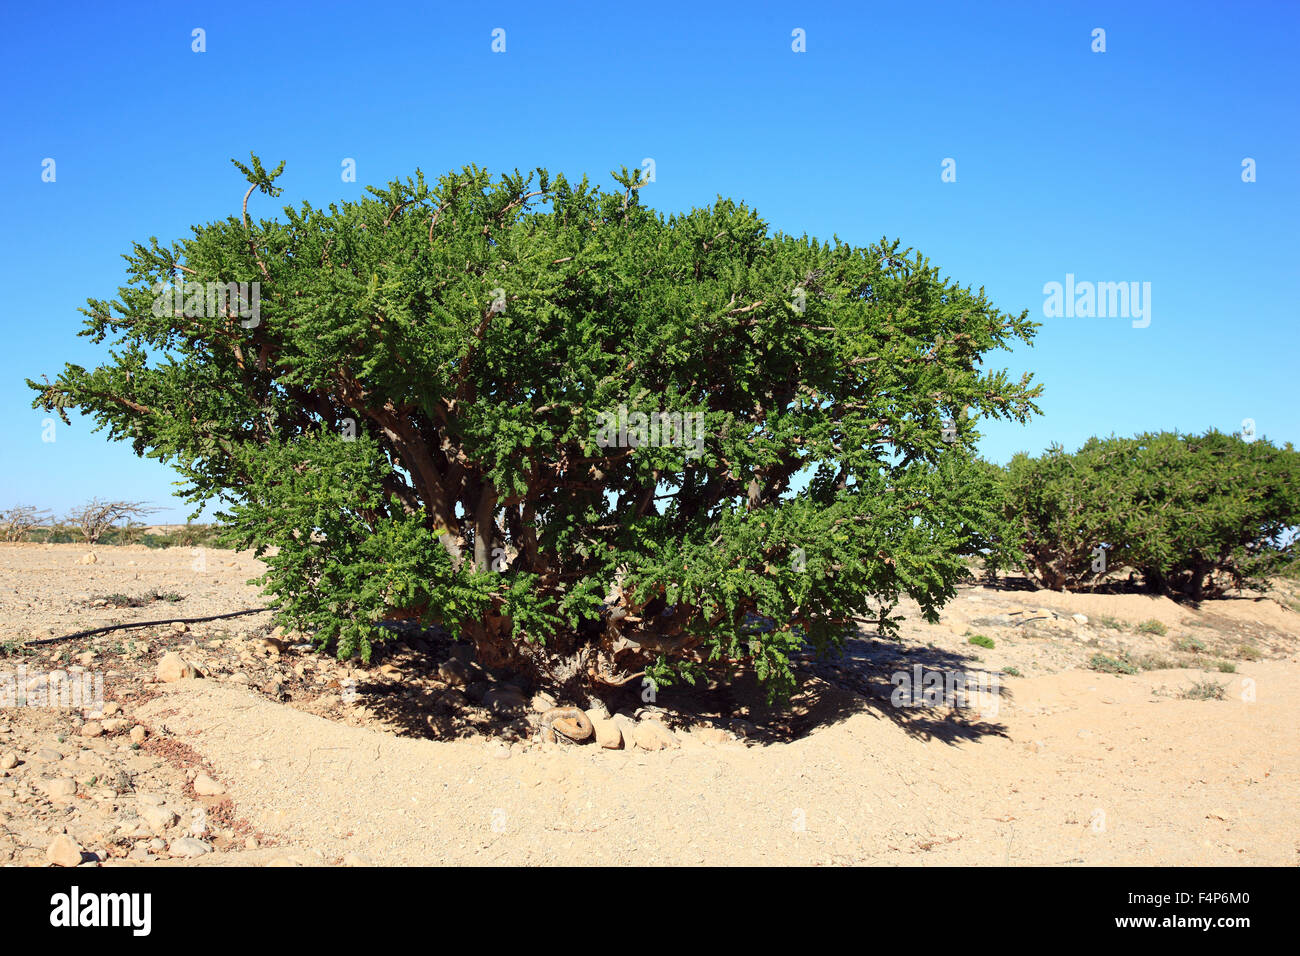 Dawqah Wadi, arbre d'encens cultures, du patrimoine culturel mondial de l'UNESCO / héritier naturel, Boswellia carterii Sacra, à Salalah, Oman Banque D'Images